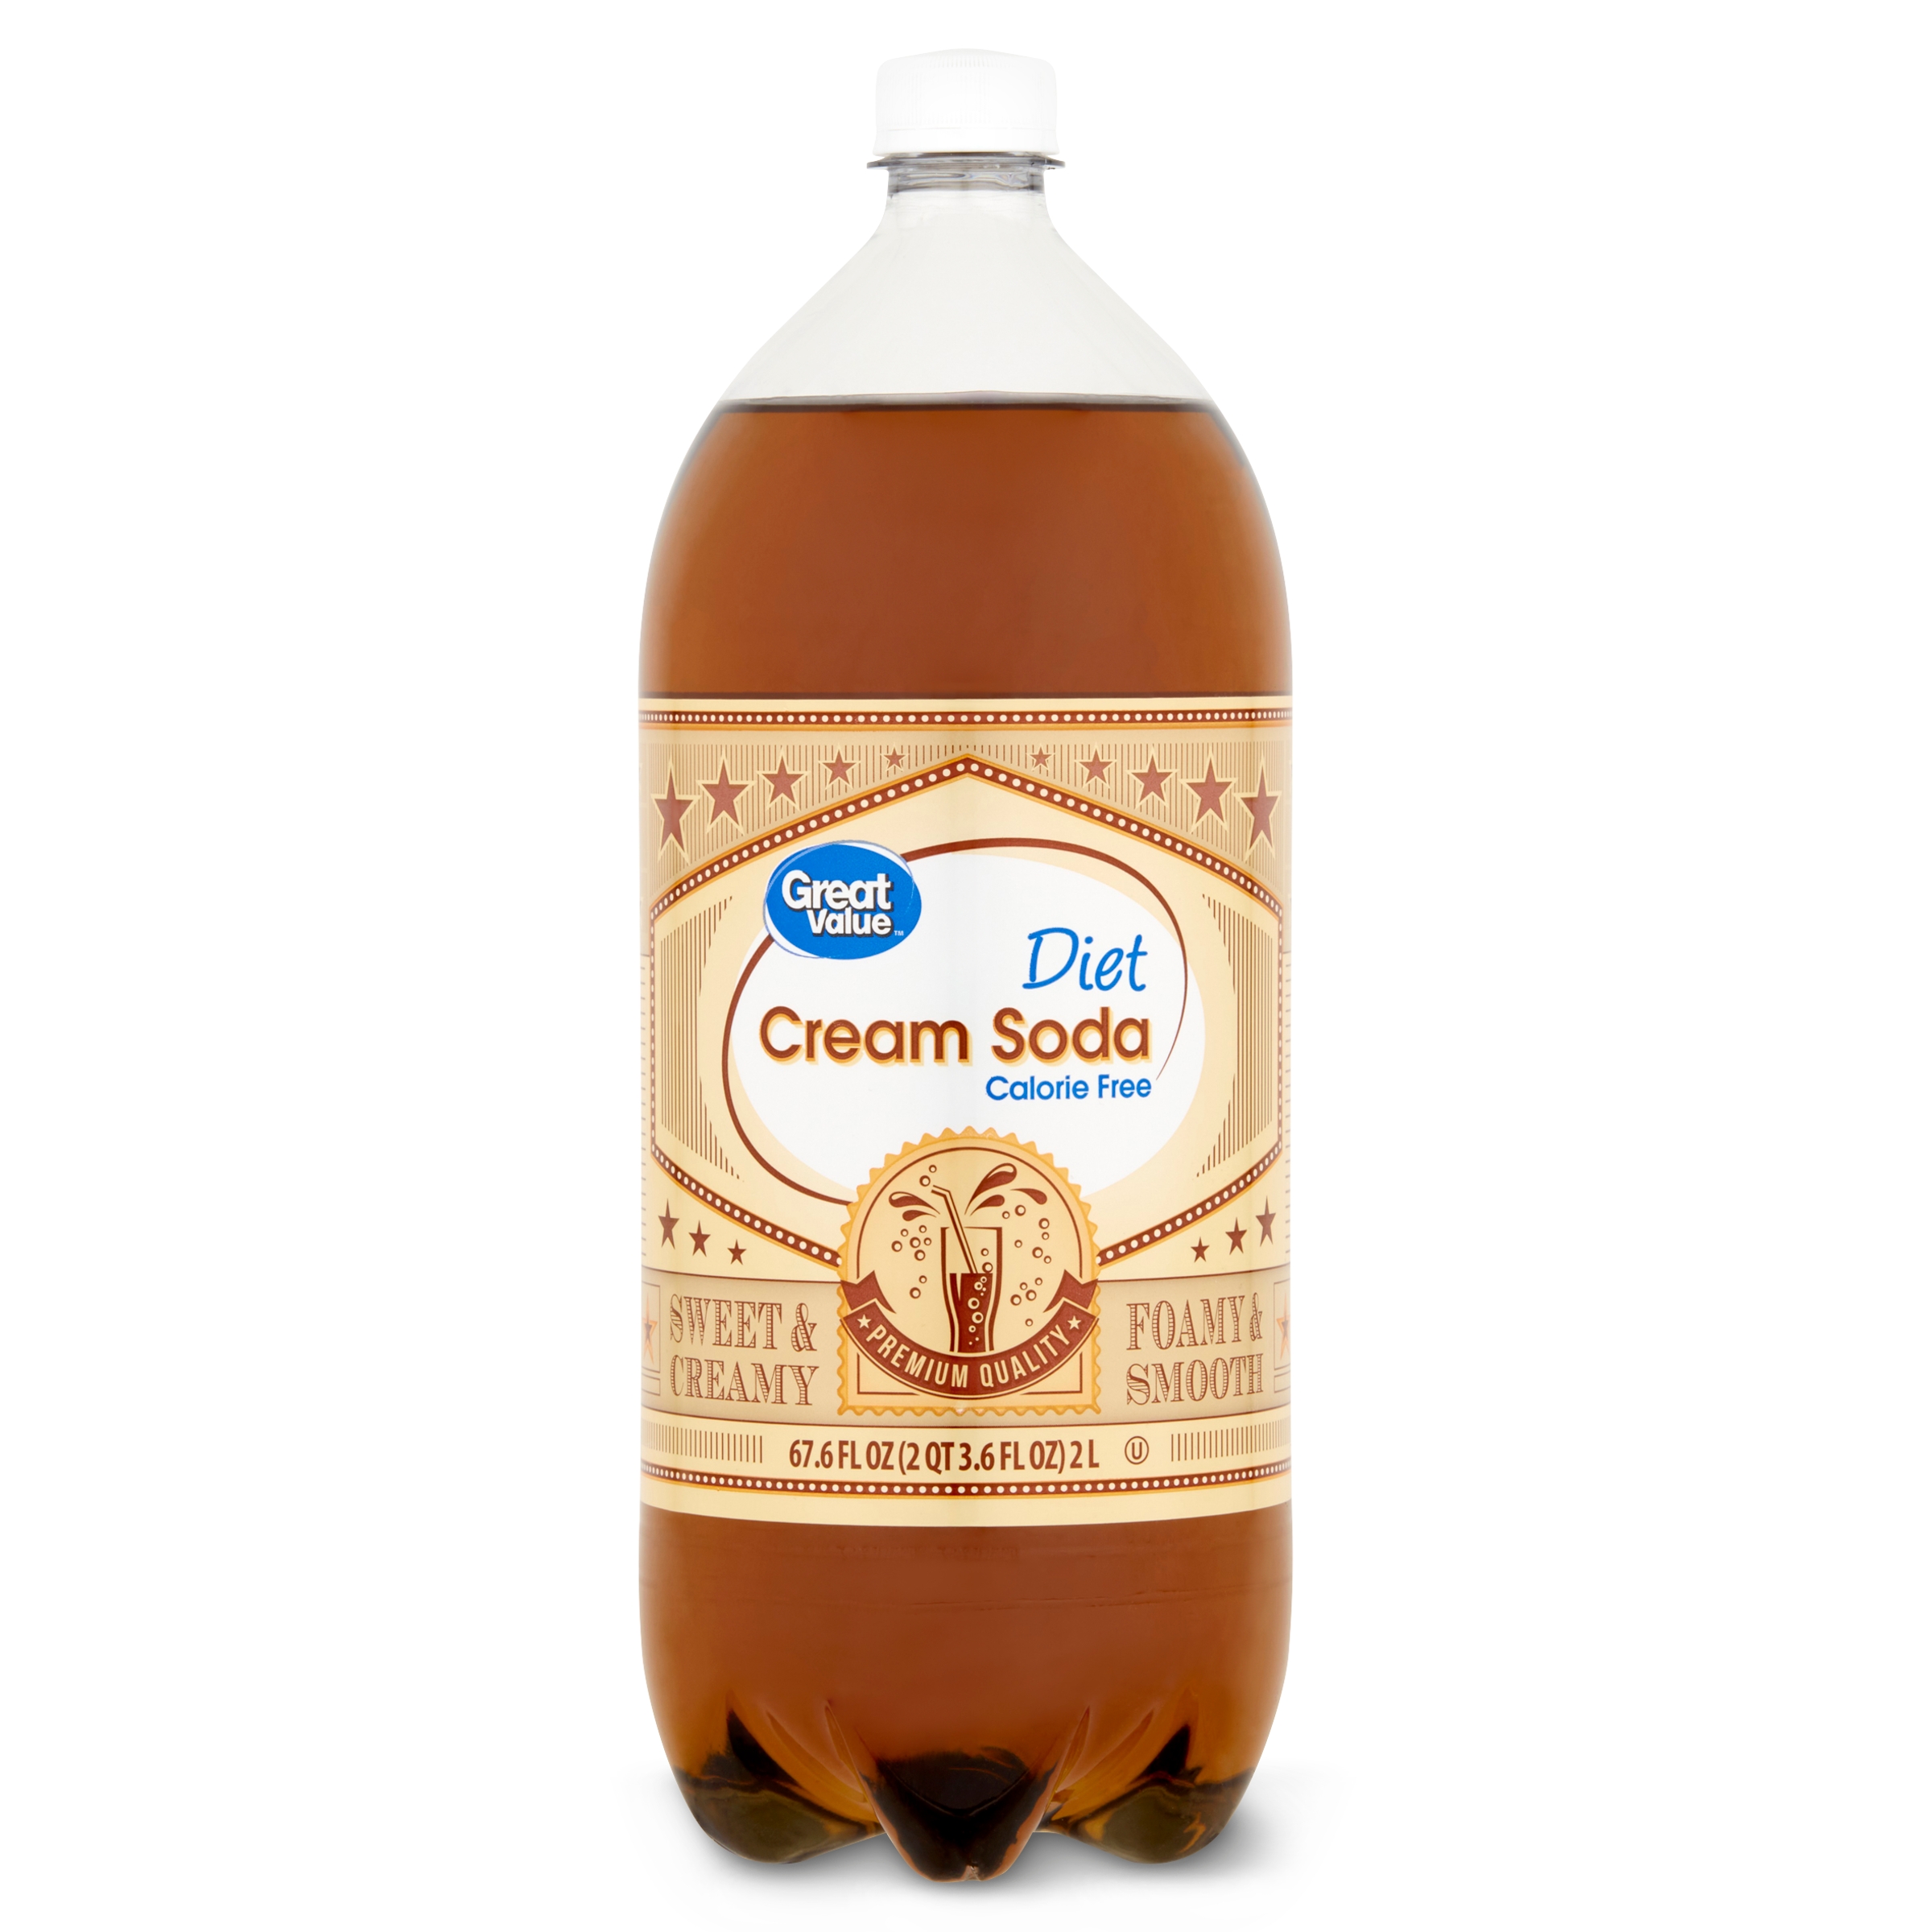 Great Value Diet Cream Soda, 2 Liter Bottle - image 1 of 7